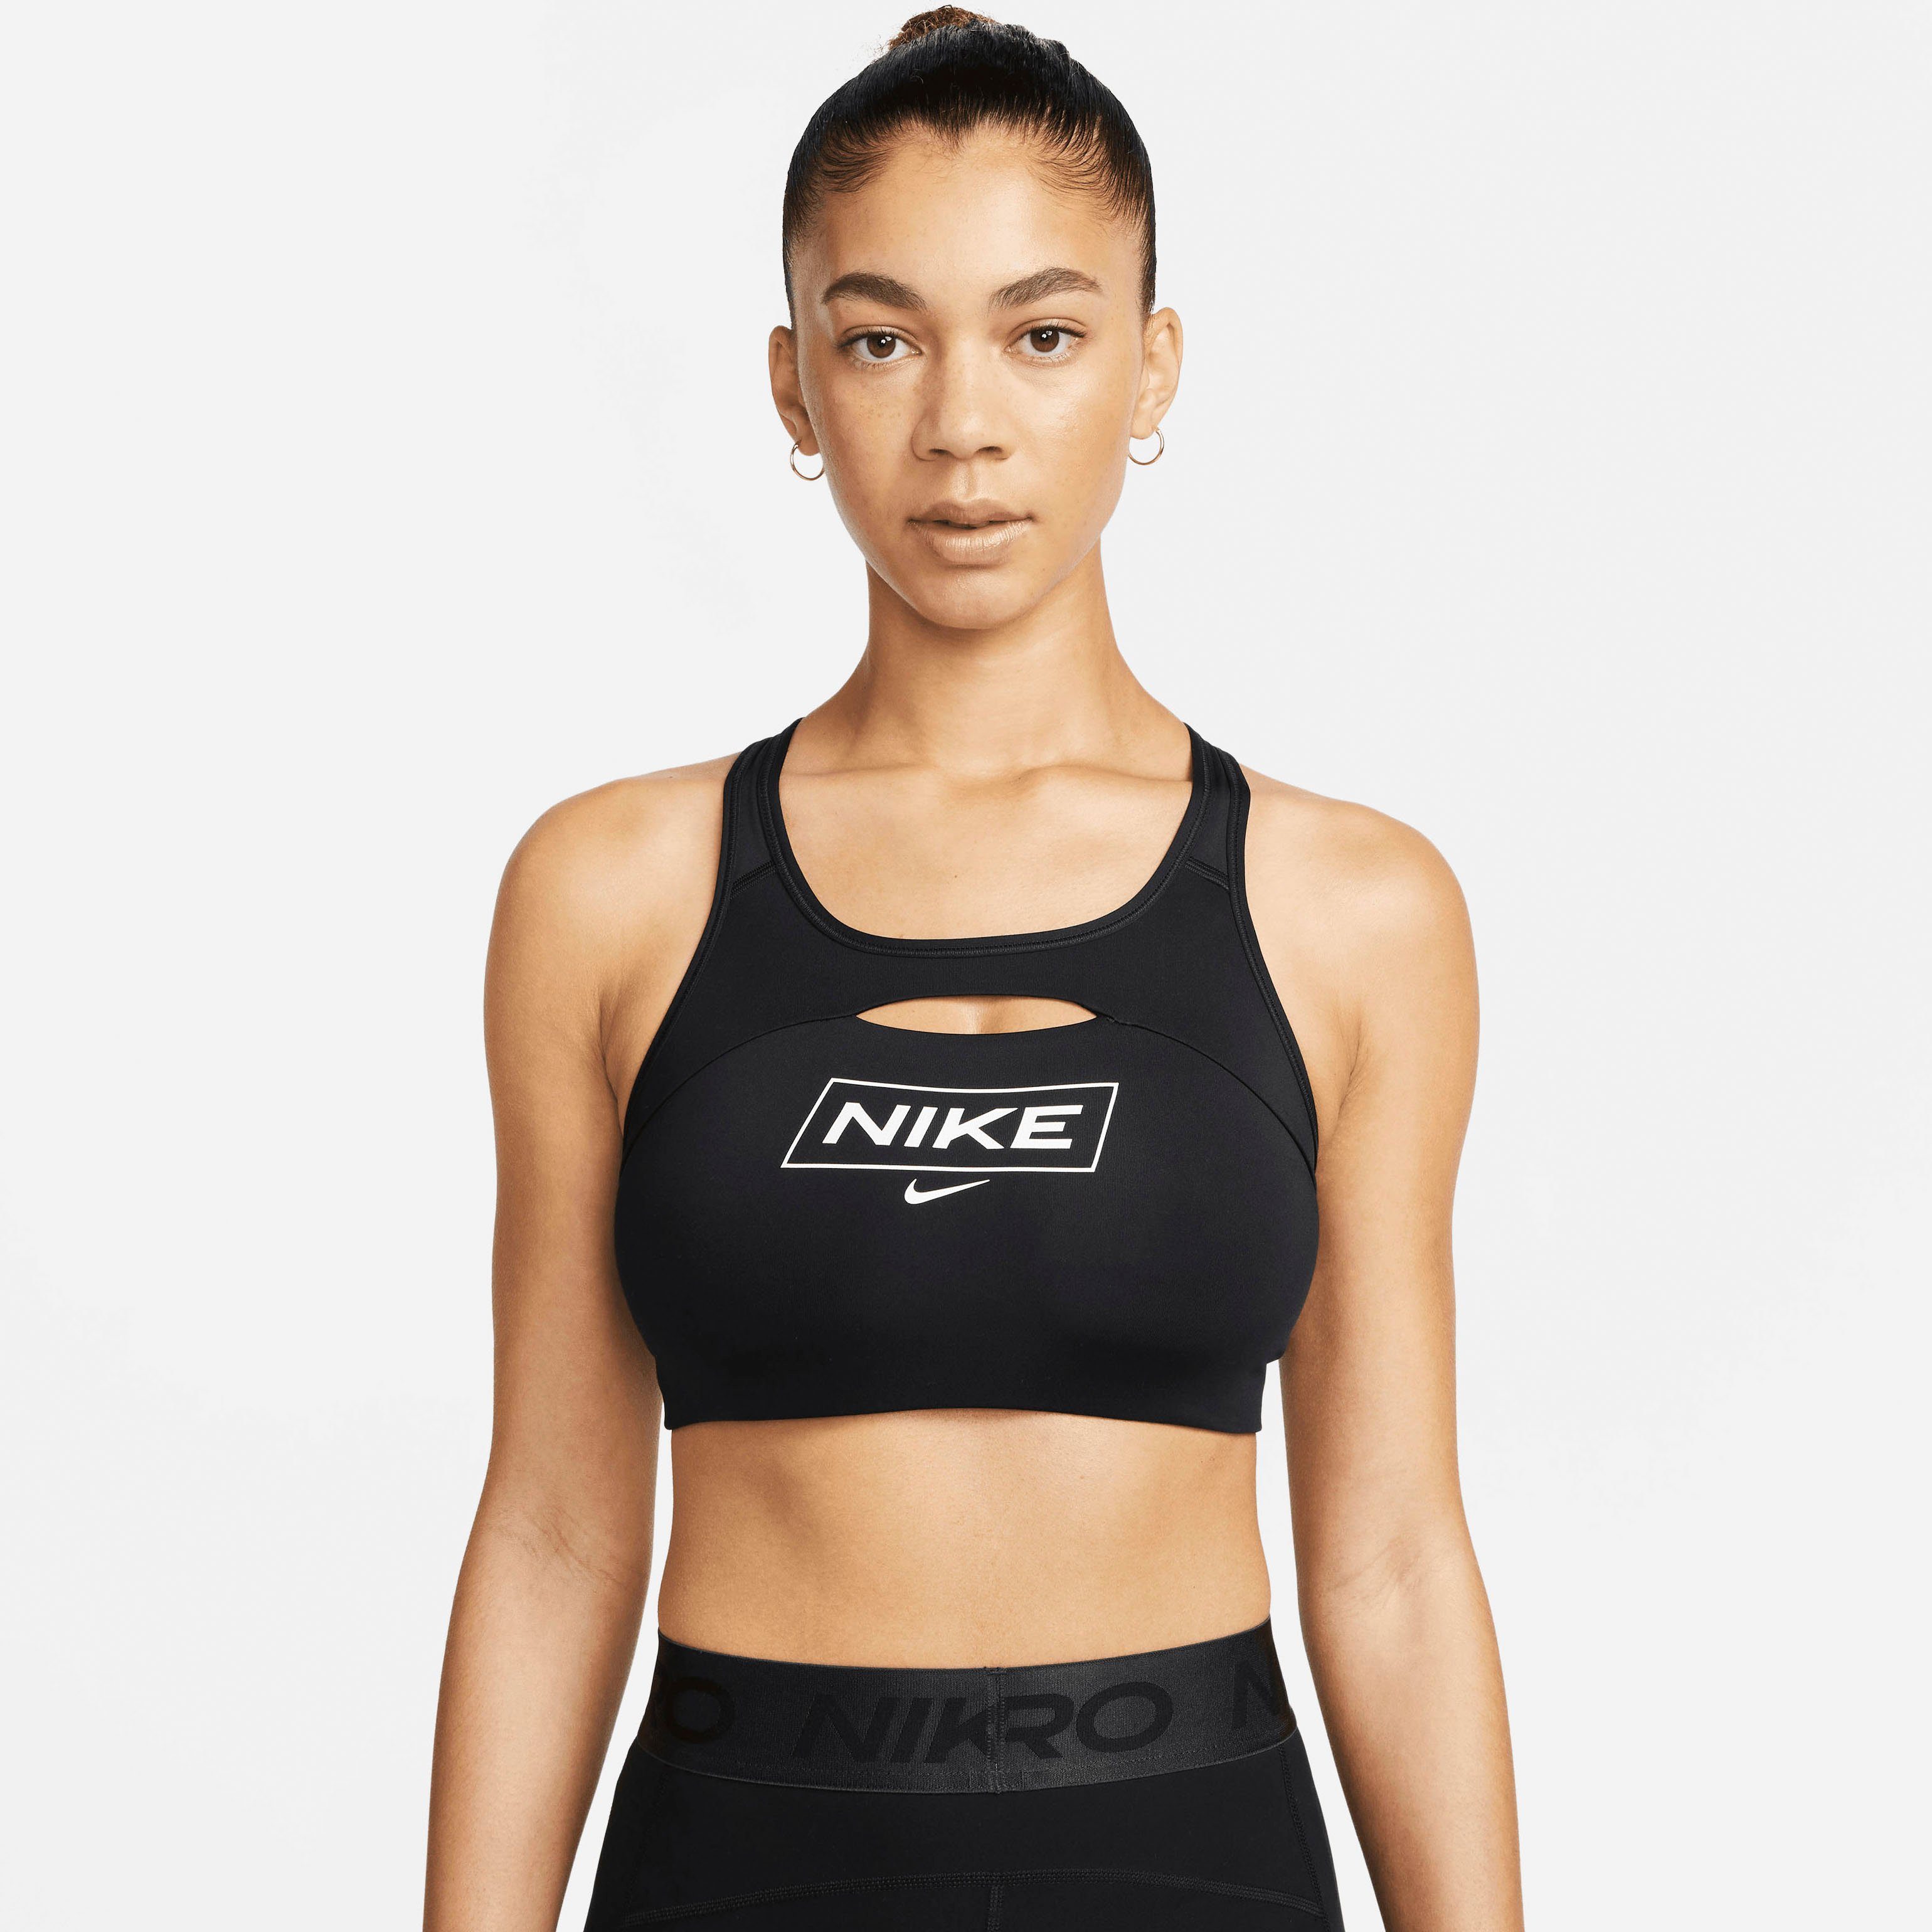 Günstige Nike Sport-BHs online kaufen » Reduziert im SALE | OTTO